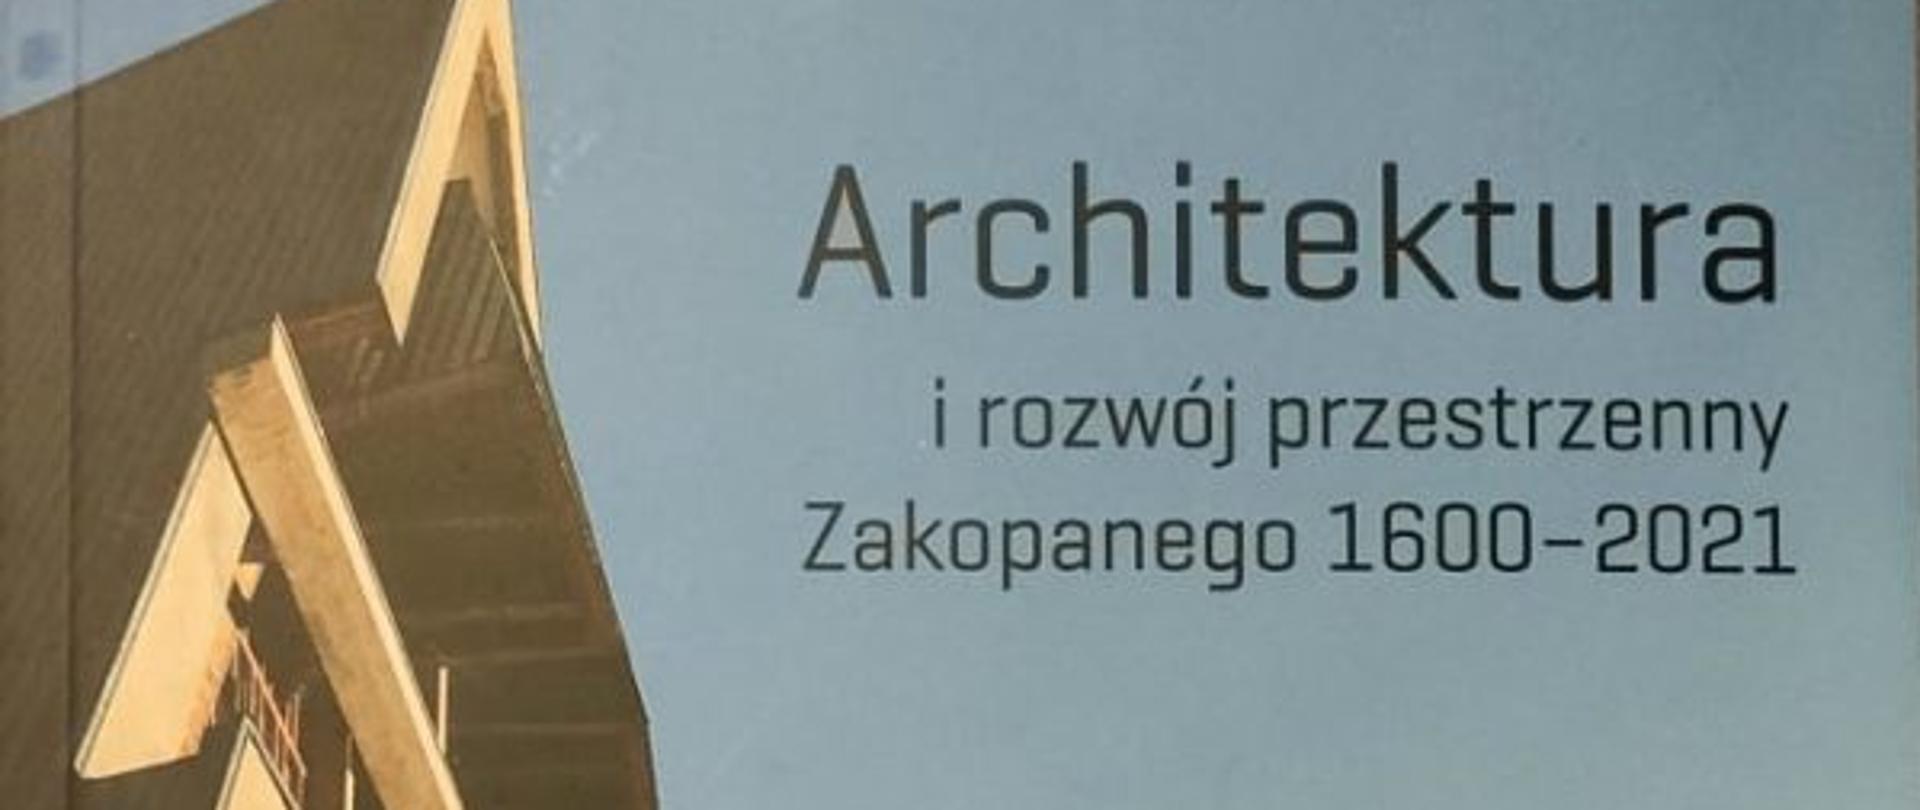 Architektura i rozwój przestrzenny Zakopanego 1600-2021